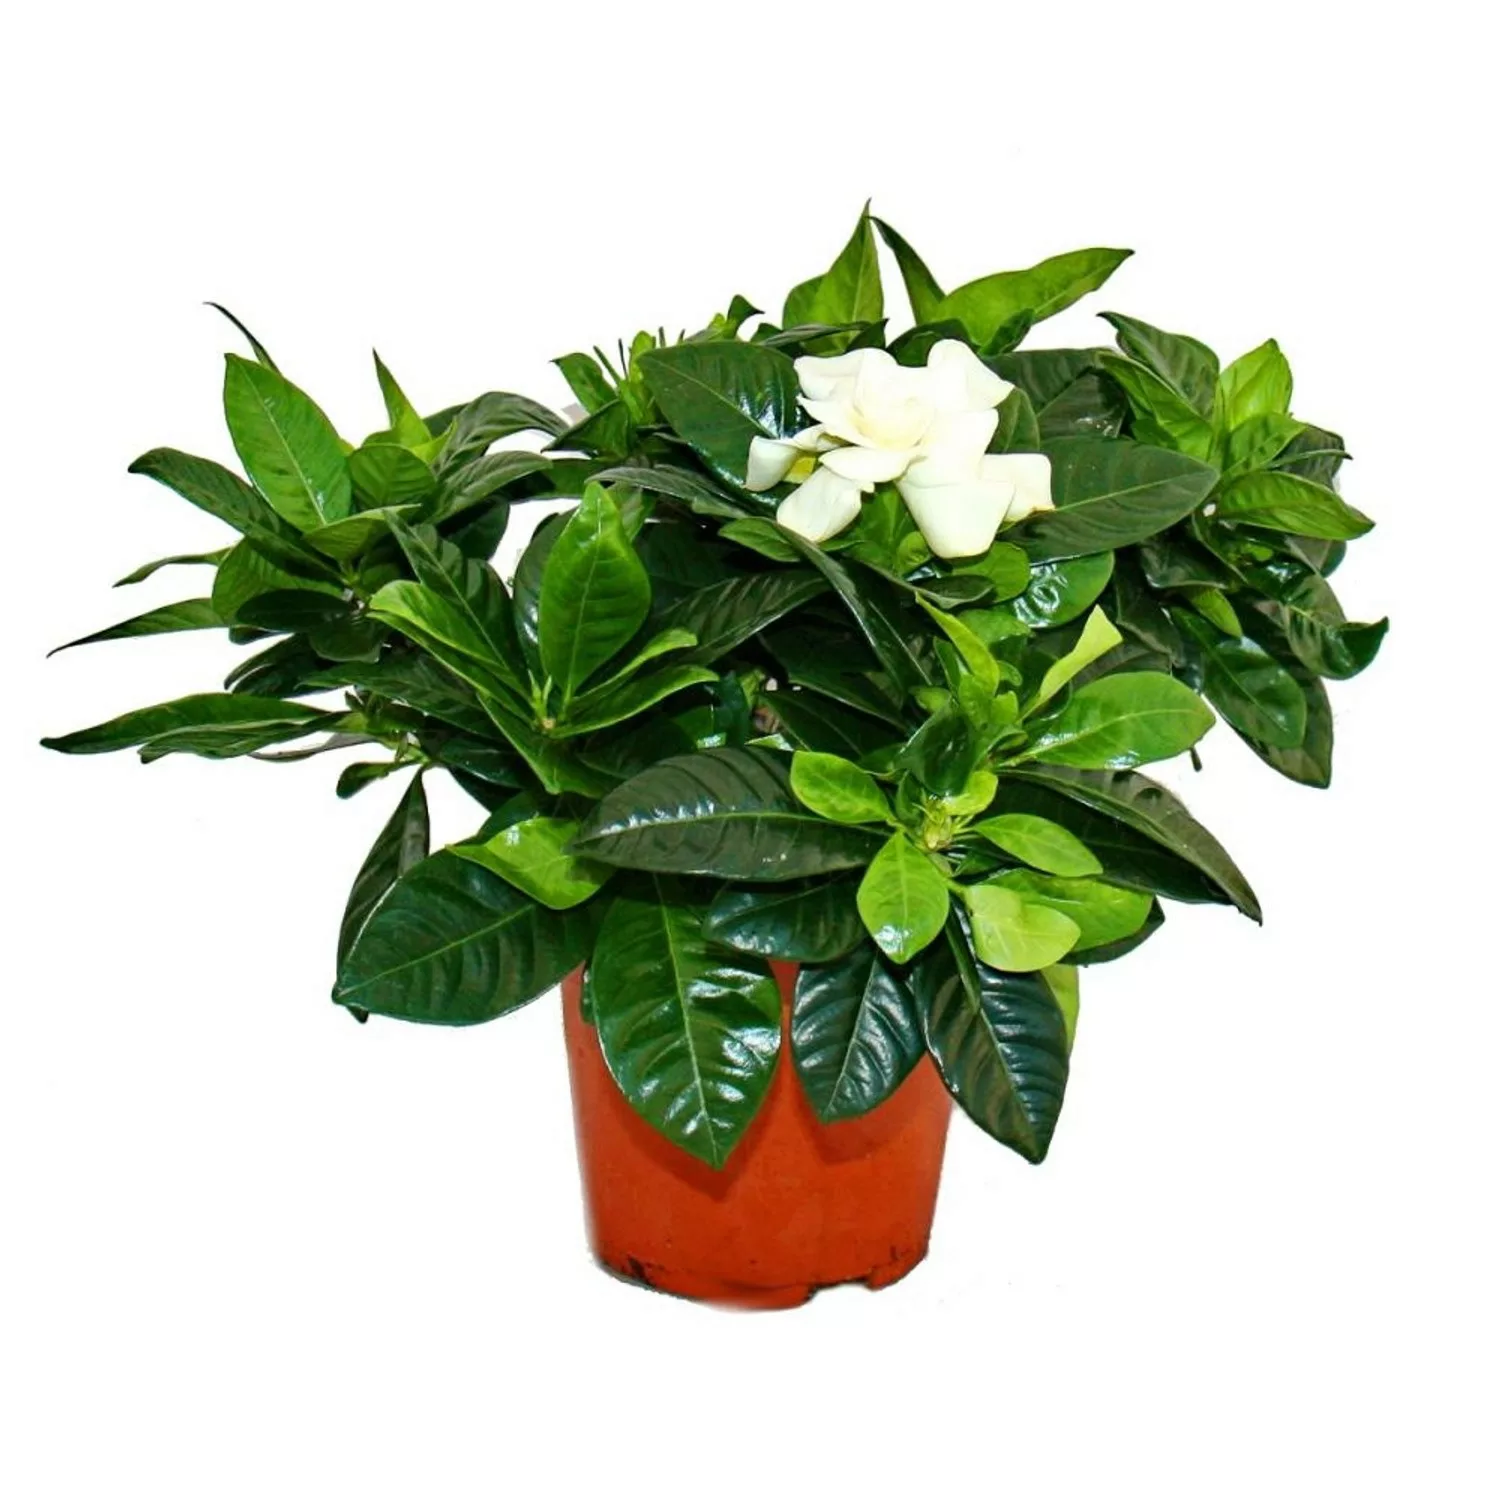 Exotenherz Gardenie Duftende Blütenpflanze mit Cremeweiß Farbenen Blüten 12 günstig online kaufen